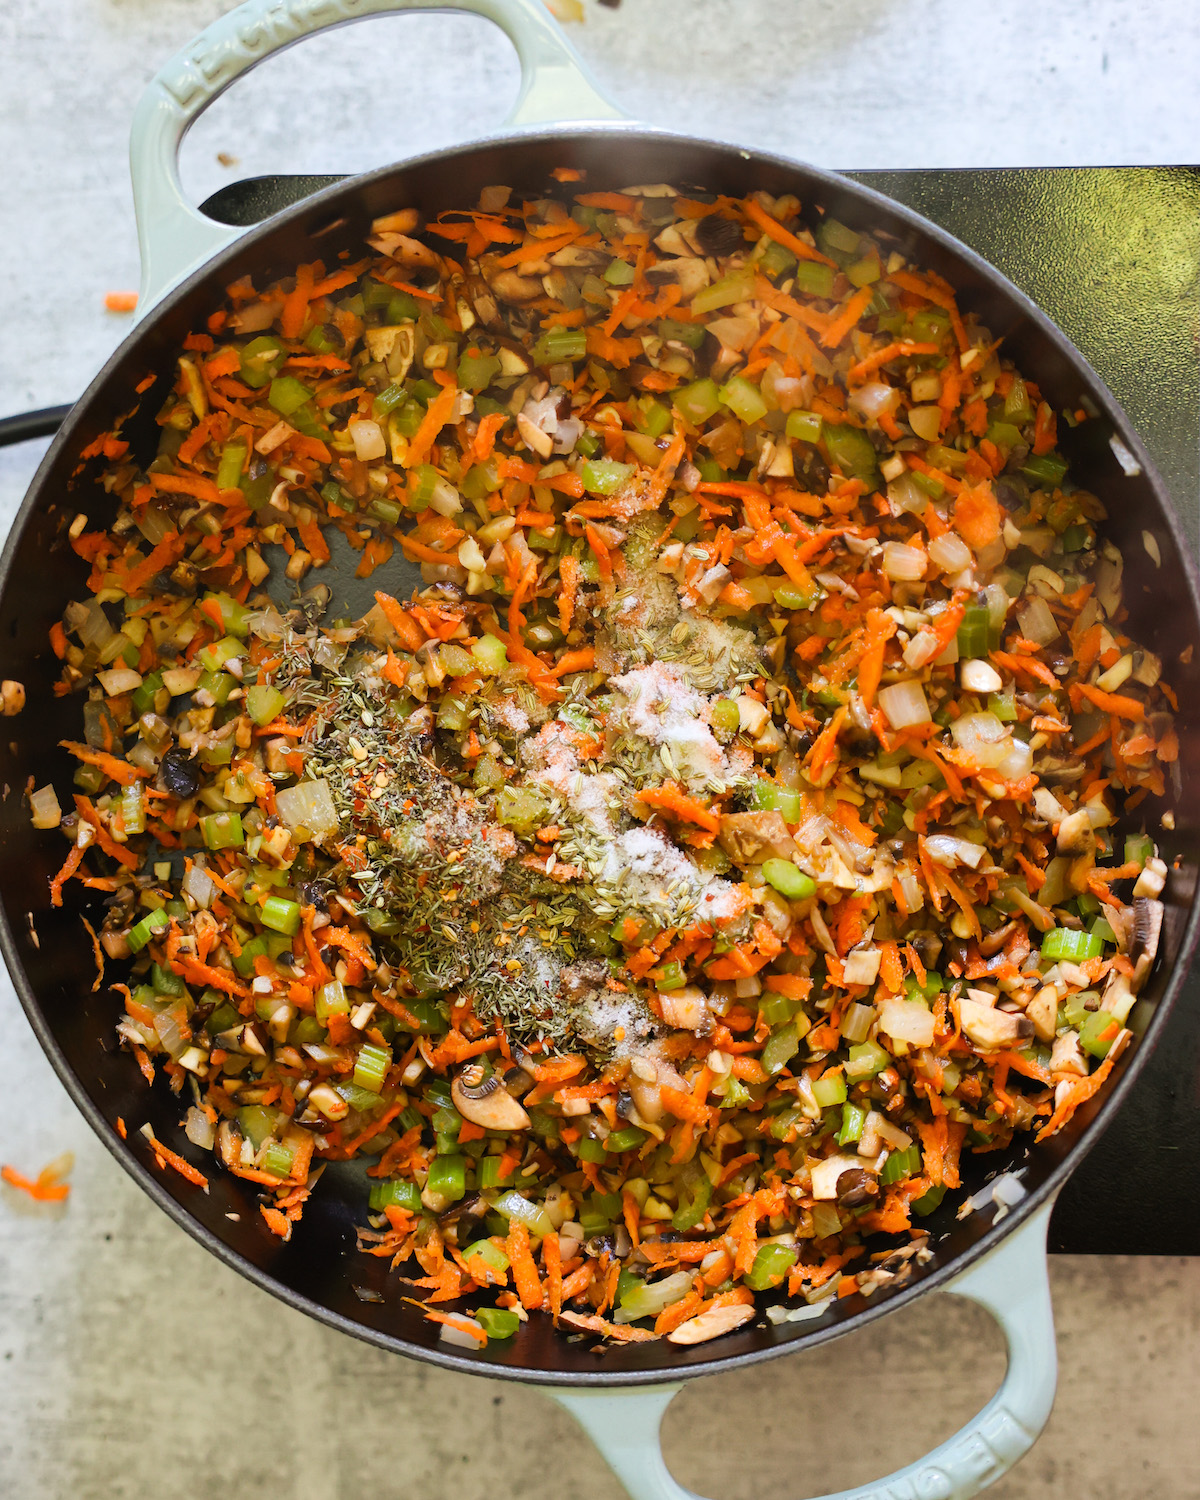 spices added to vegan meatloaf in skillet